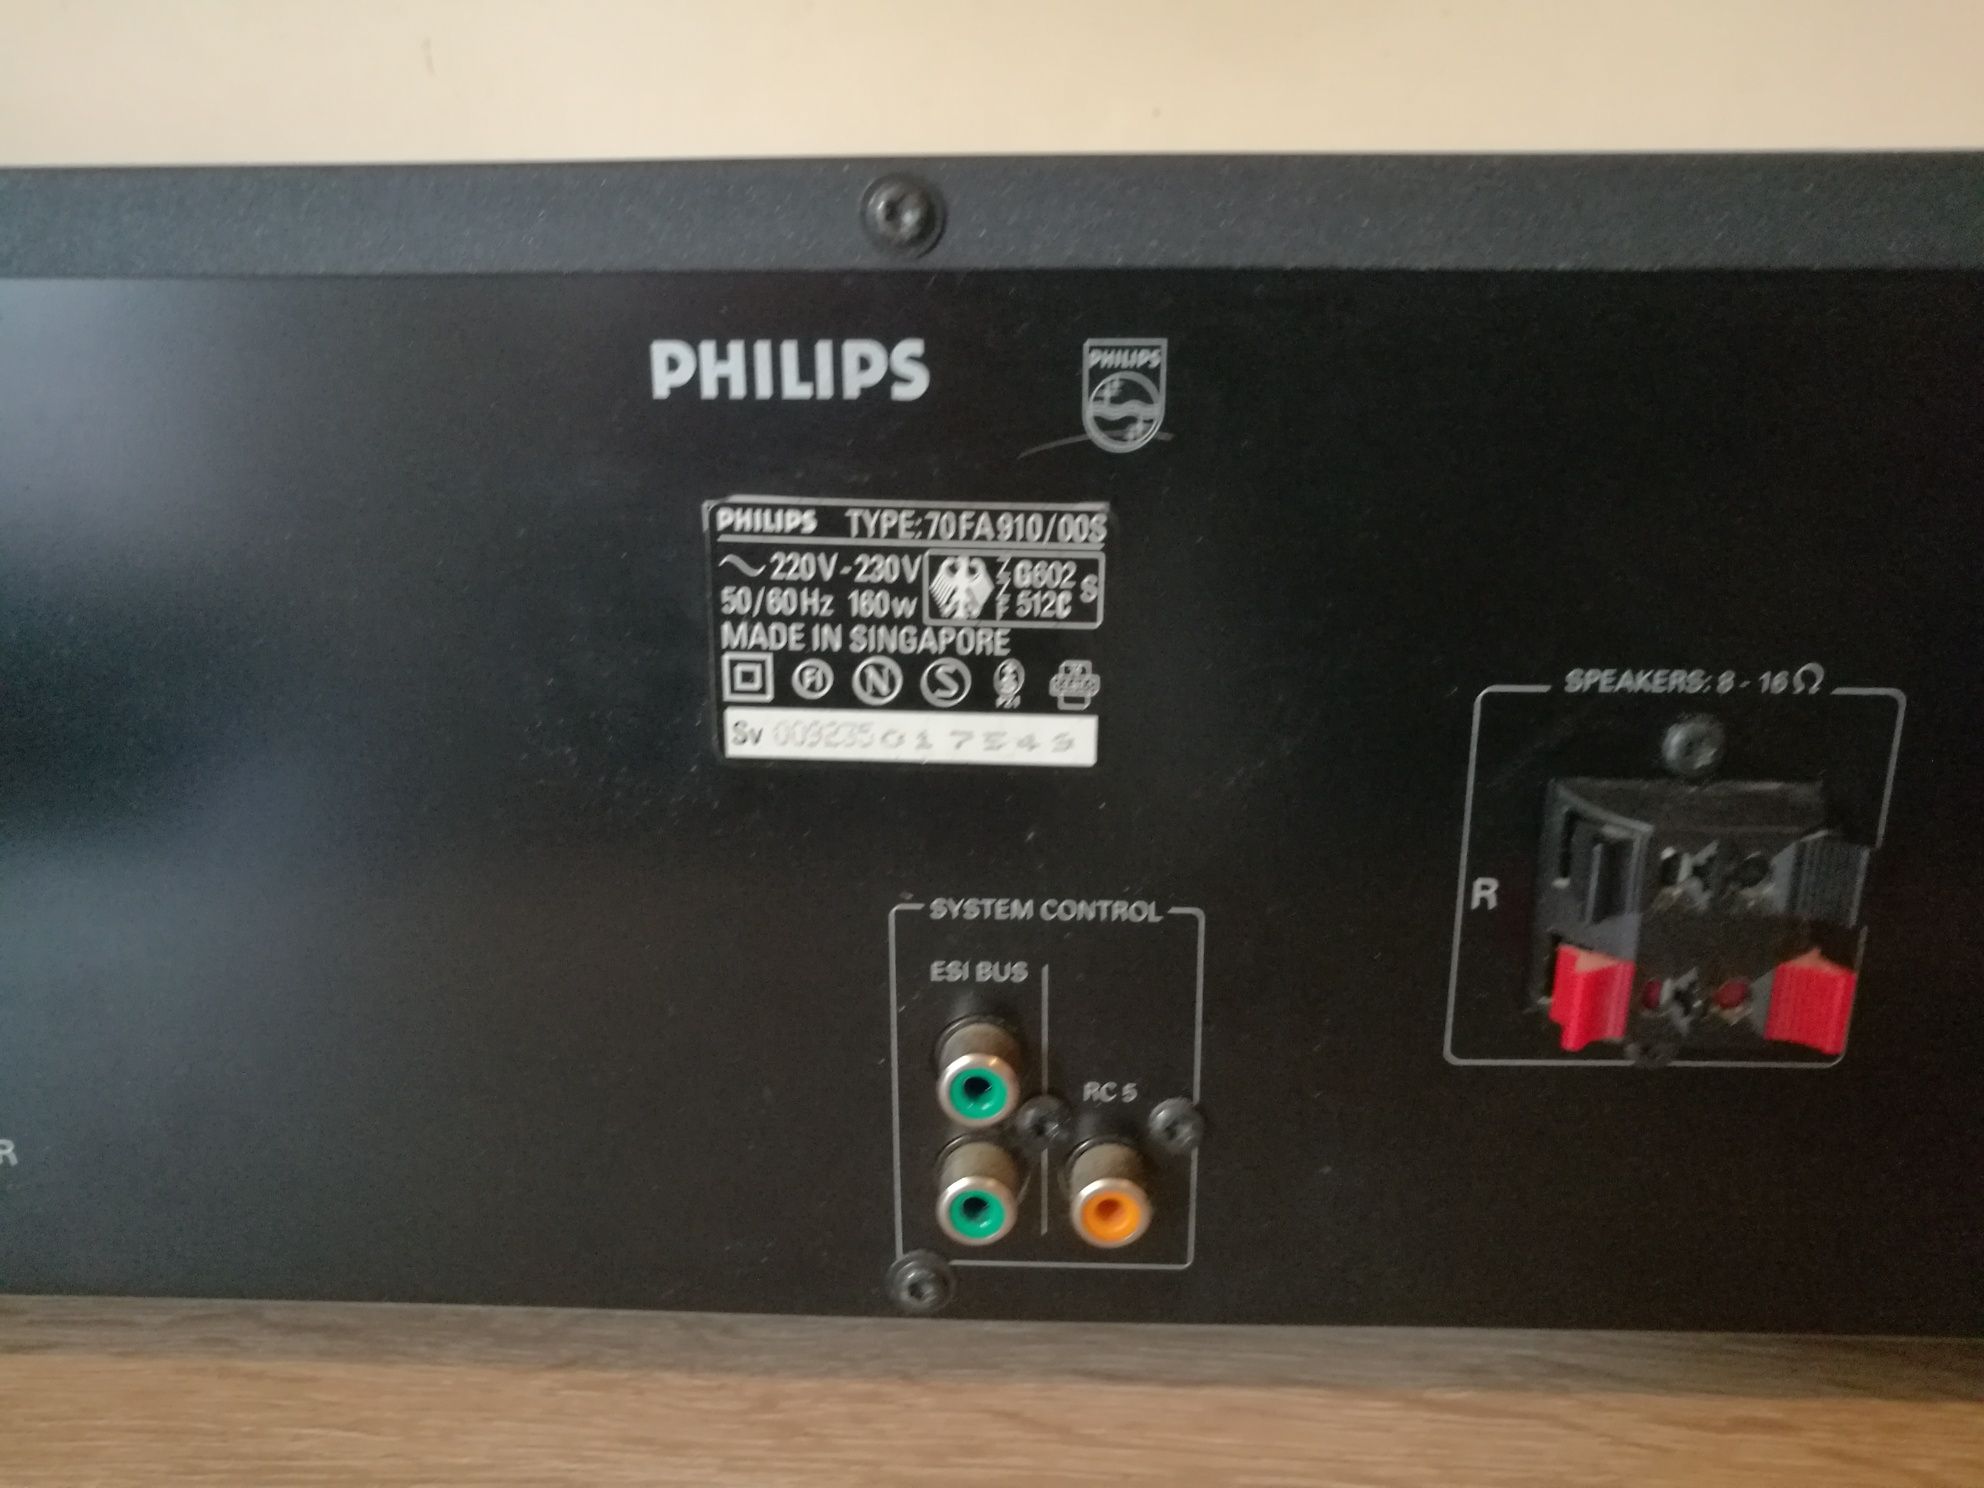 Wzmacniacz Philips 70 FA 910